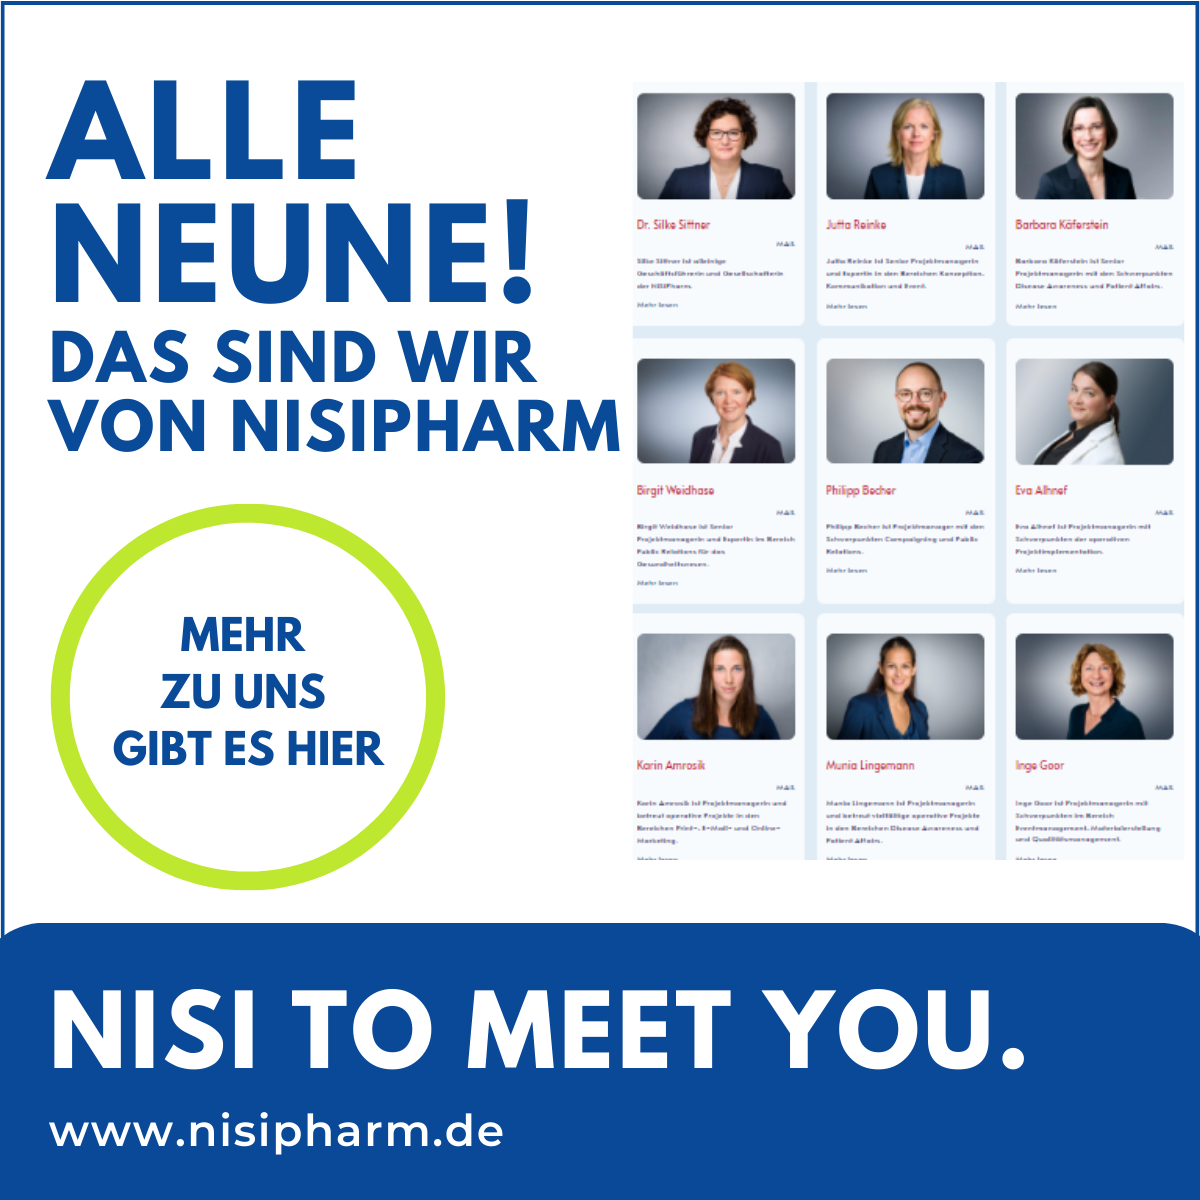 Vorstellung des NiSiPharm-Teams, mit der Headline: Alle Neune und Verlinkung auf die Webseite